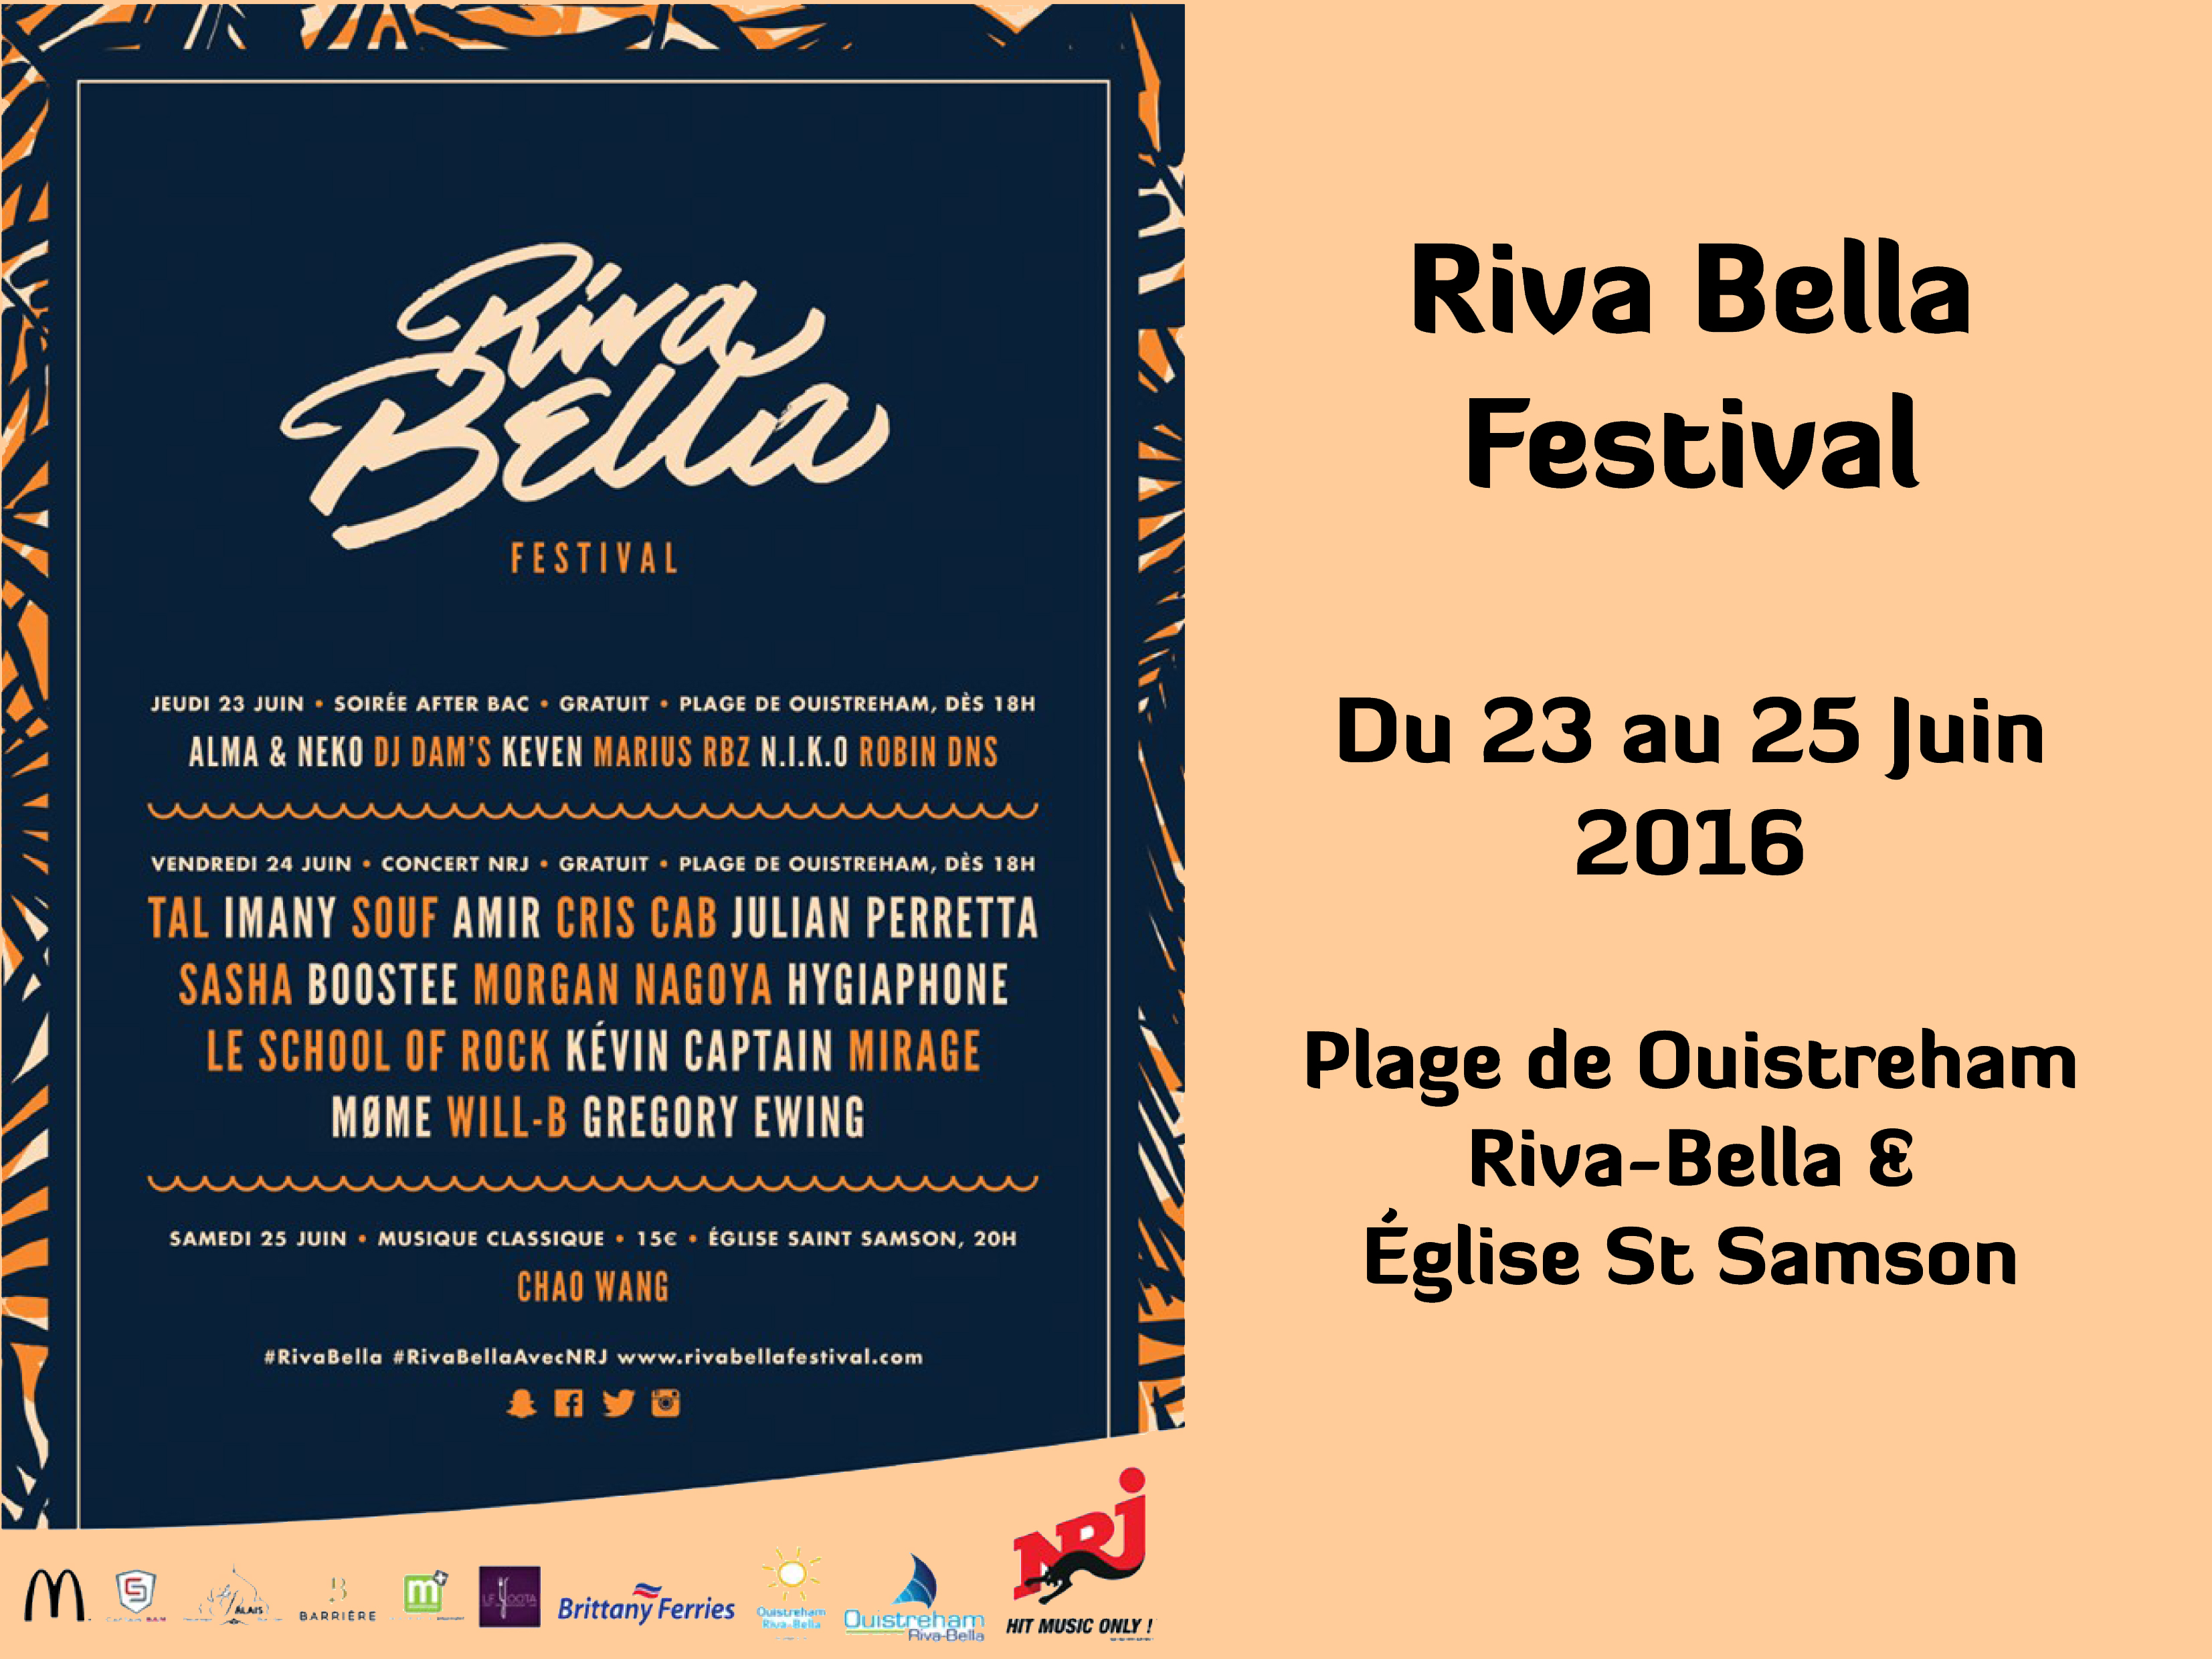 Riva Bella Festival 2016